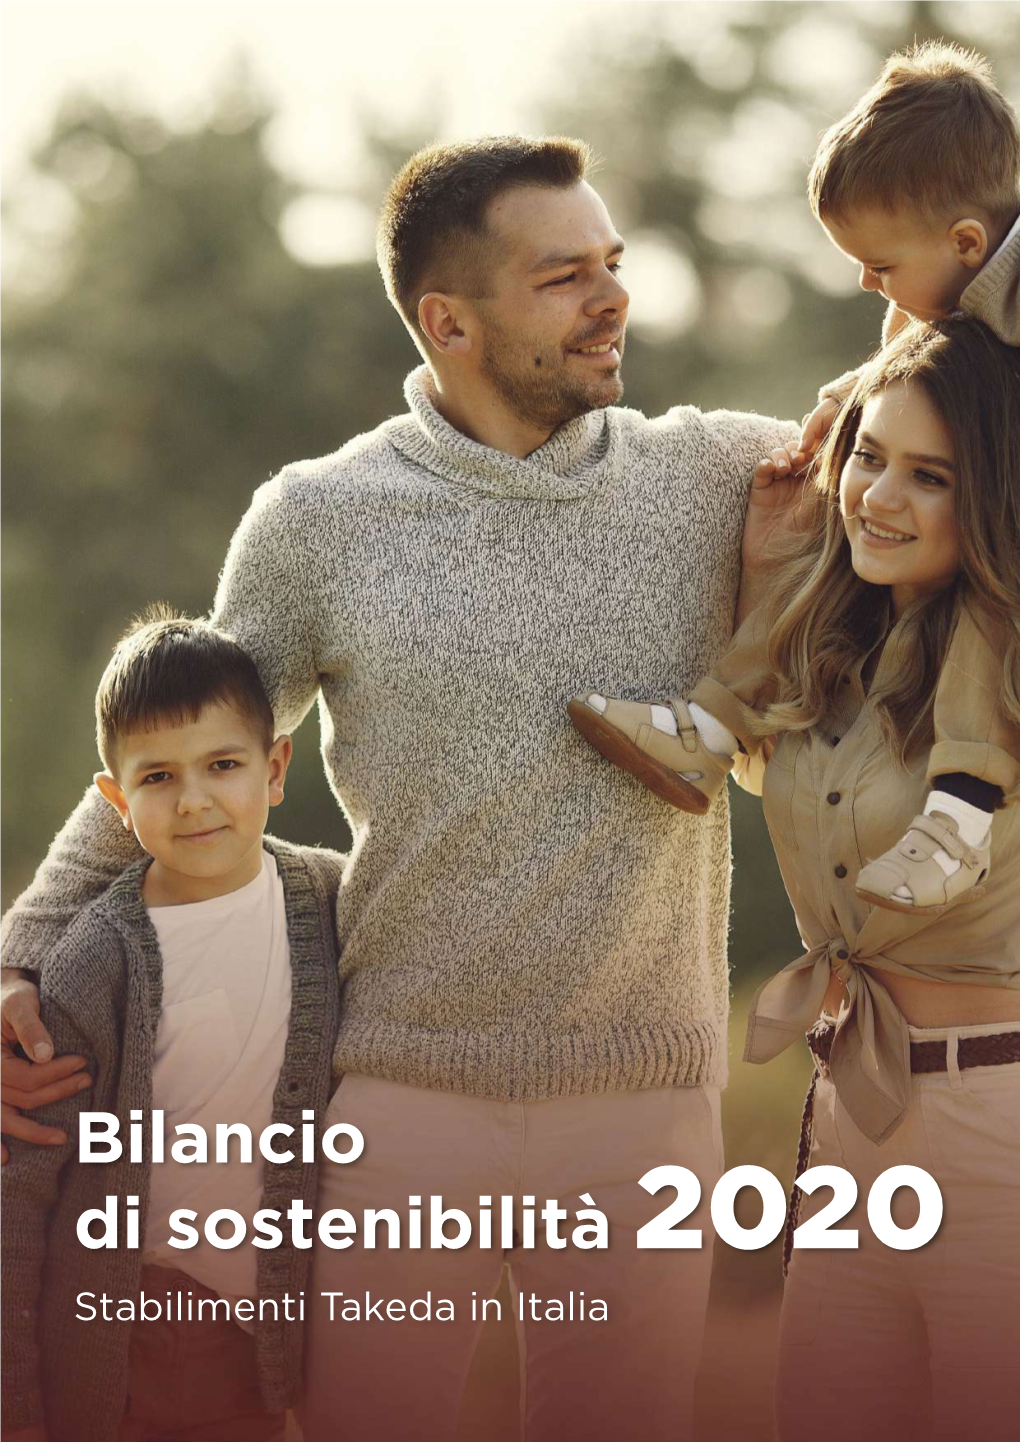 Bilancio Di Sostenibilità 2020 Stabilimenti Takeda in Italia Better Health for People, Brighter Future Sommario for the World